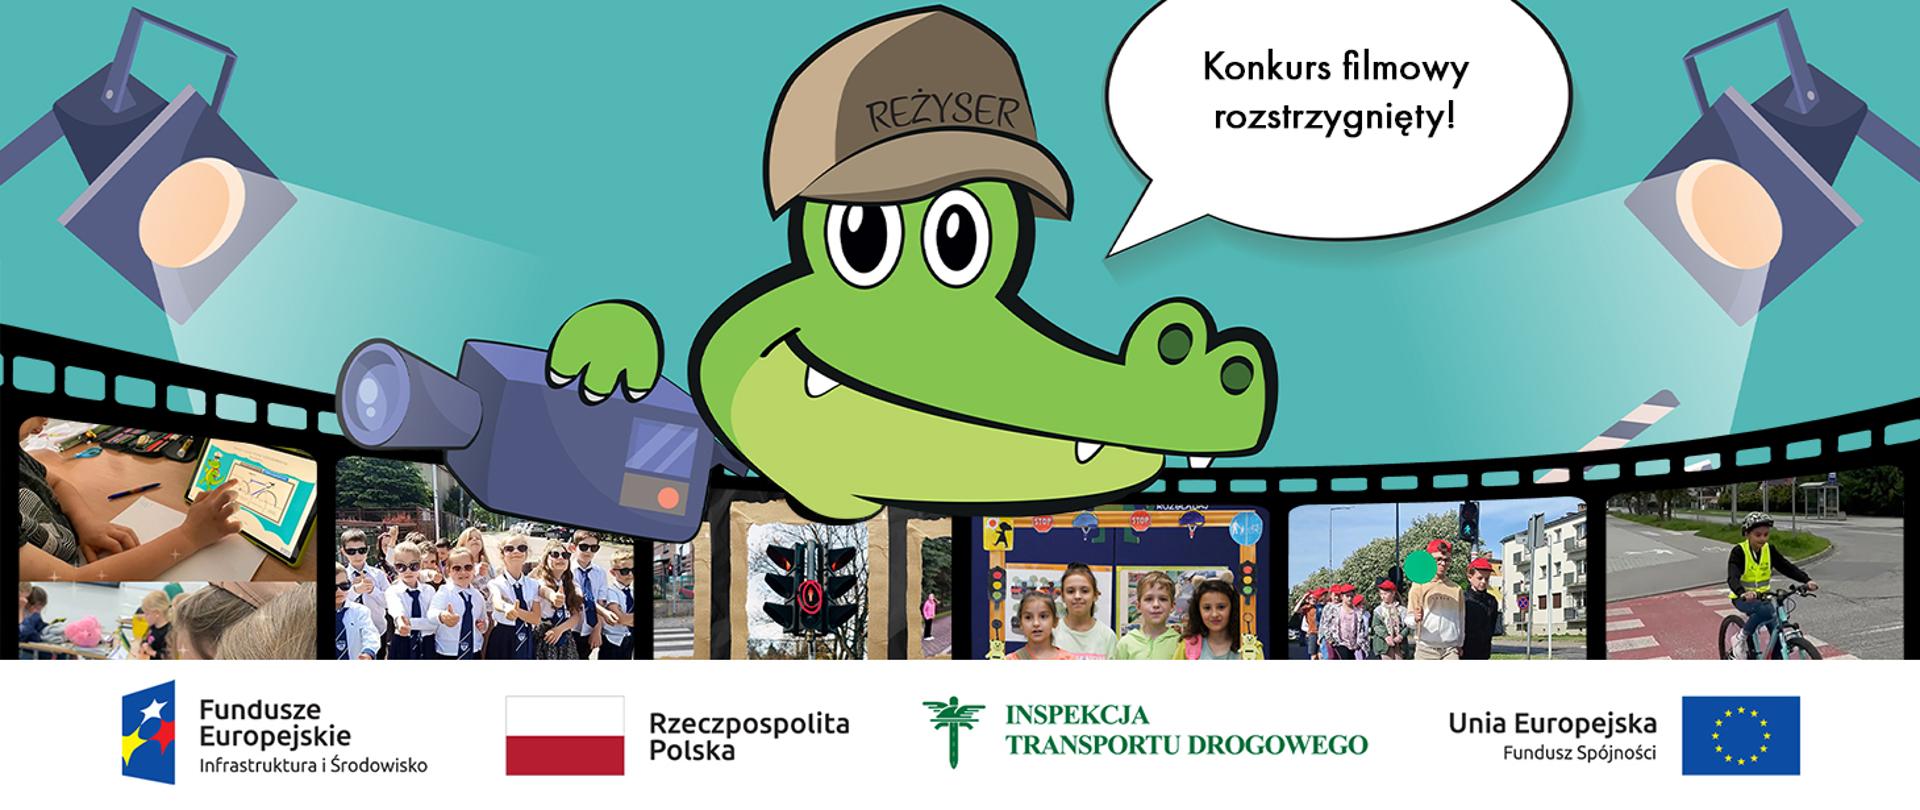 Na planie centralnym sylwetka Krokodylka Tirka w czapce z napisem REŻYSER i kamerą w prawej dłoni. Przez całą szerokość zdjęcia przechodzi klisza filmowa, na której poszczególne slajdy pokazują różne sceny przedstawione przez uczestników konkursu. Na dole zdjęcia logotypy Funduszy Europejskich , Rzeczpospolitej Polskiej, Inspekcji Transportu Drogowego i Unii Europejskiej.